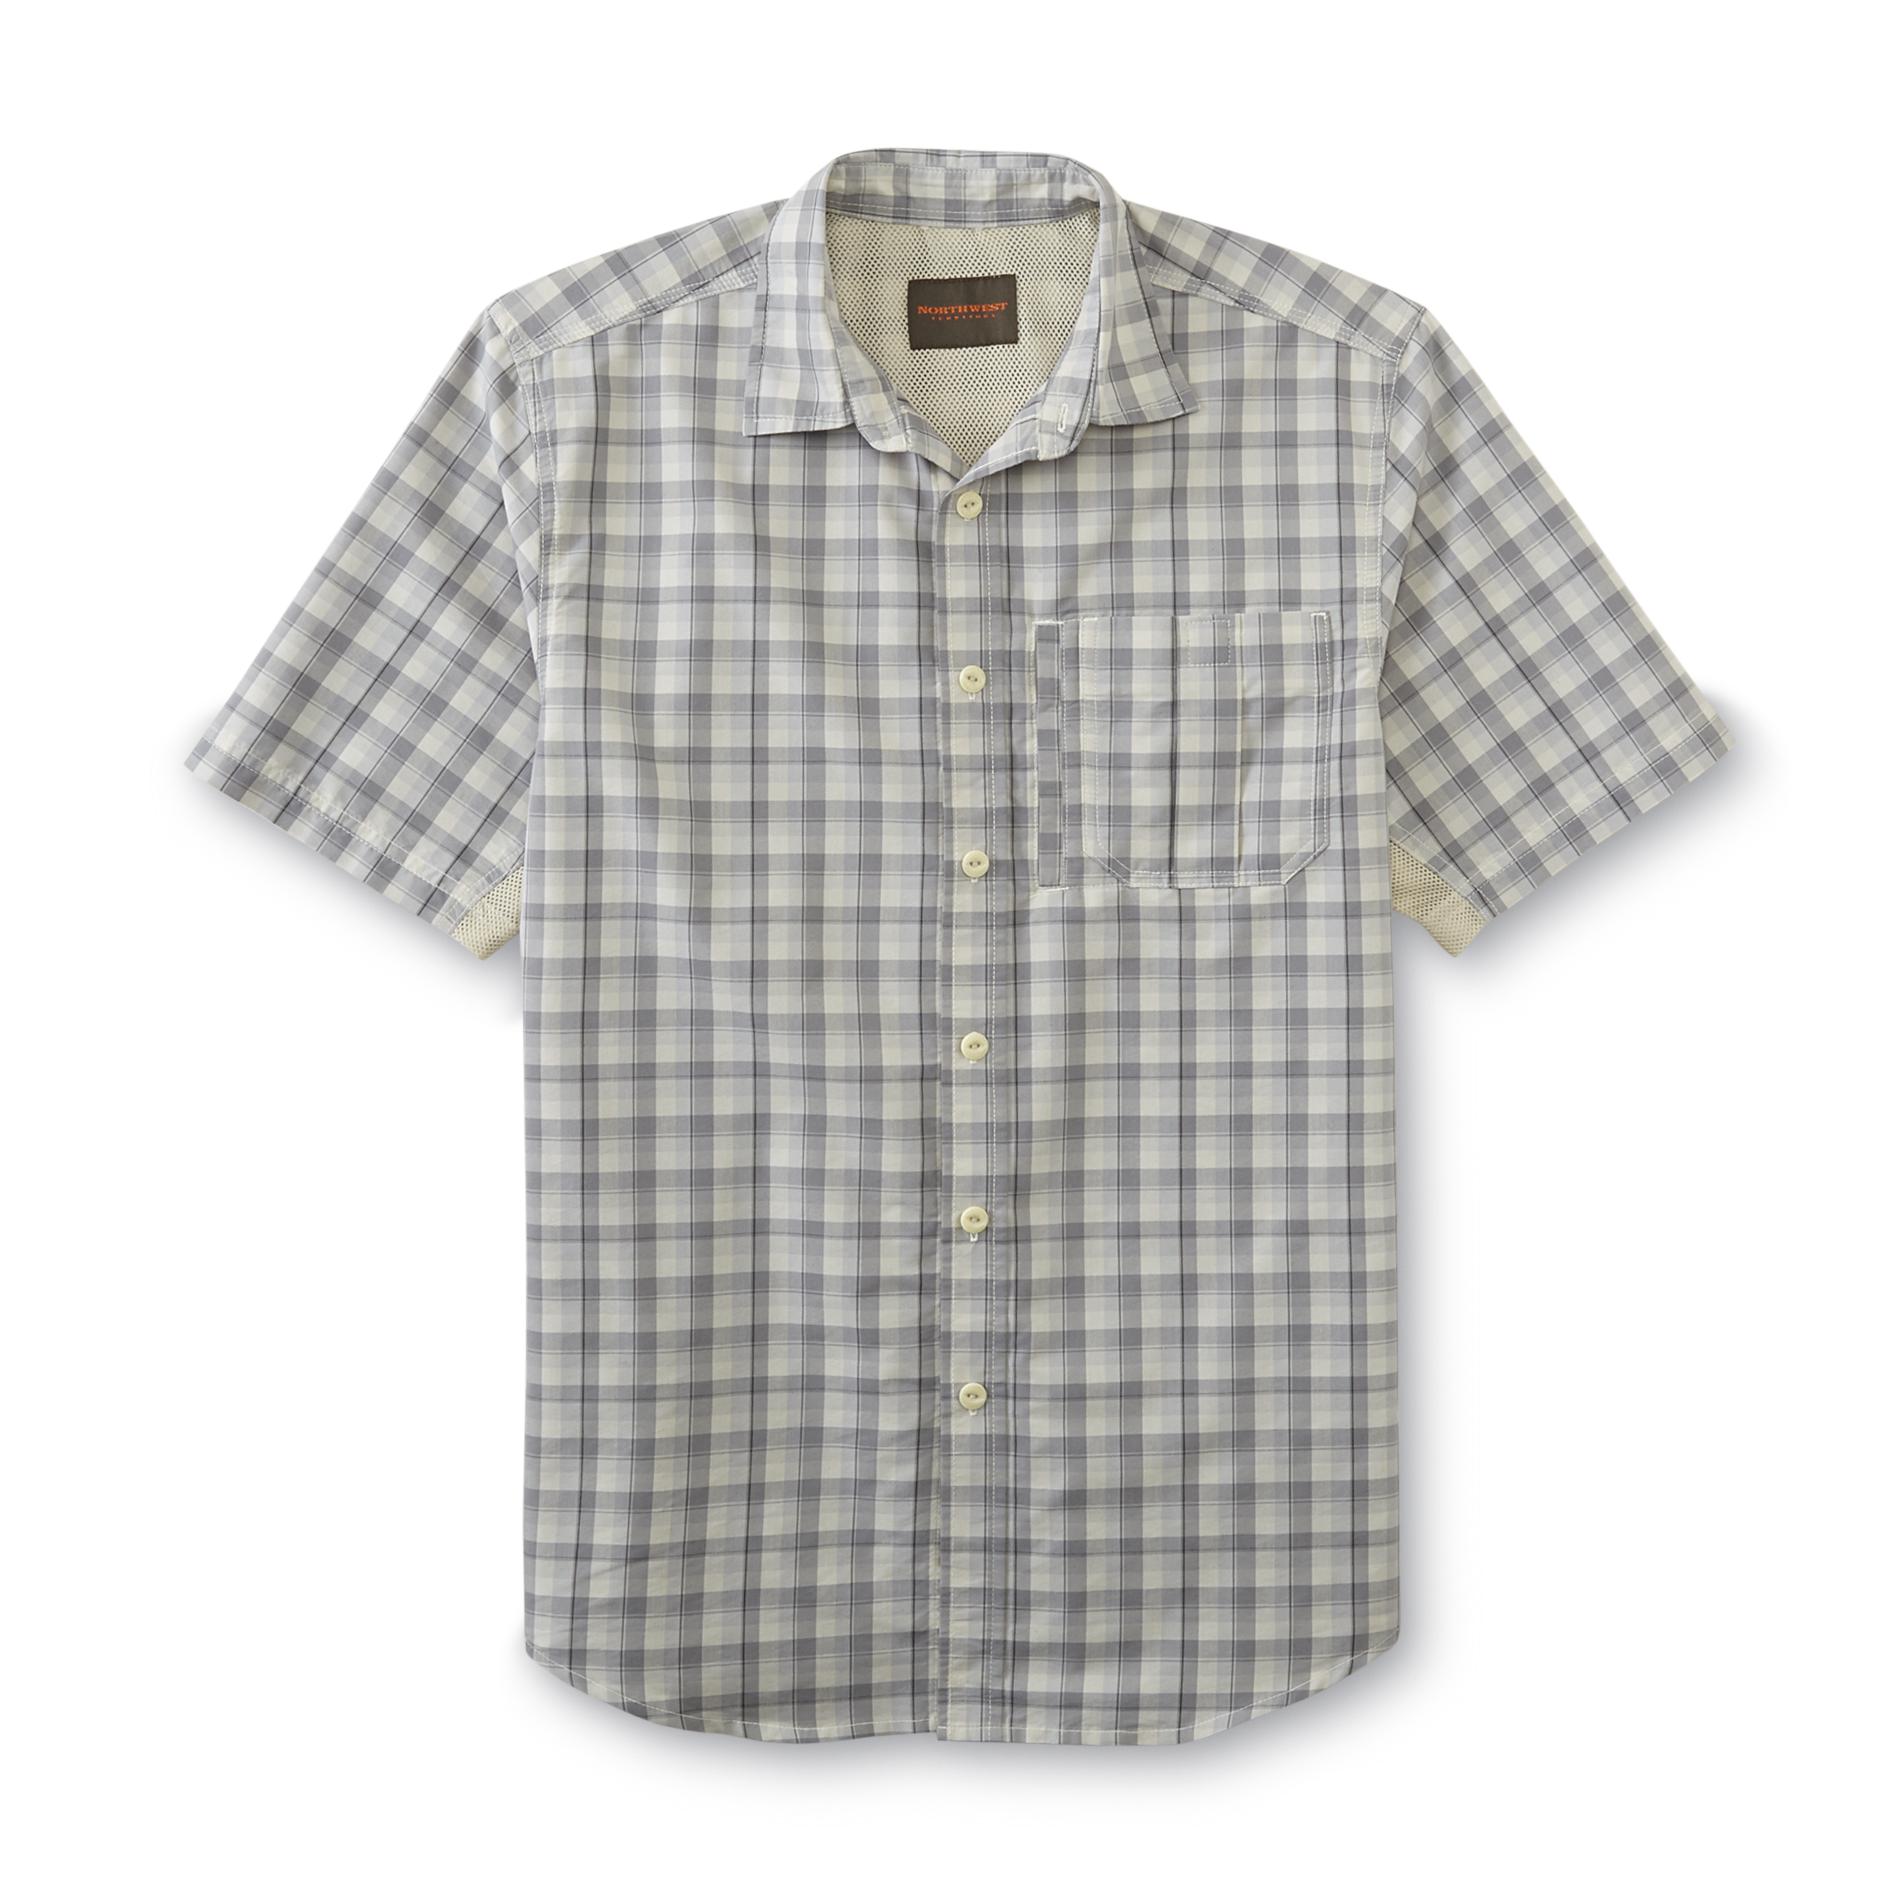 Northwest Territory Men's Short-Sleeve Utility Shirt - Plaid